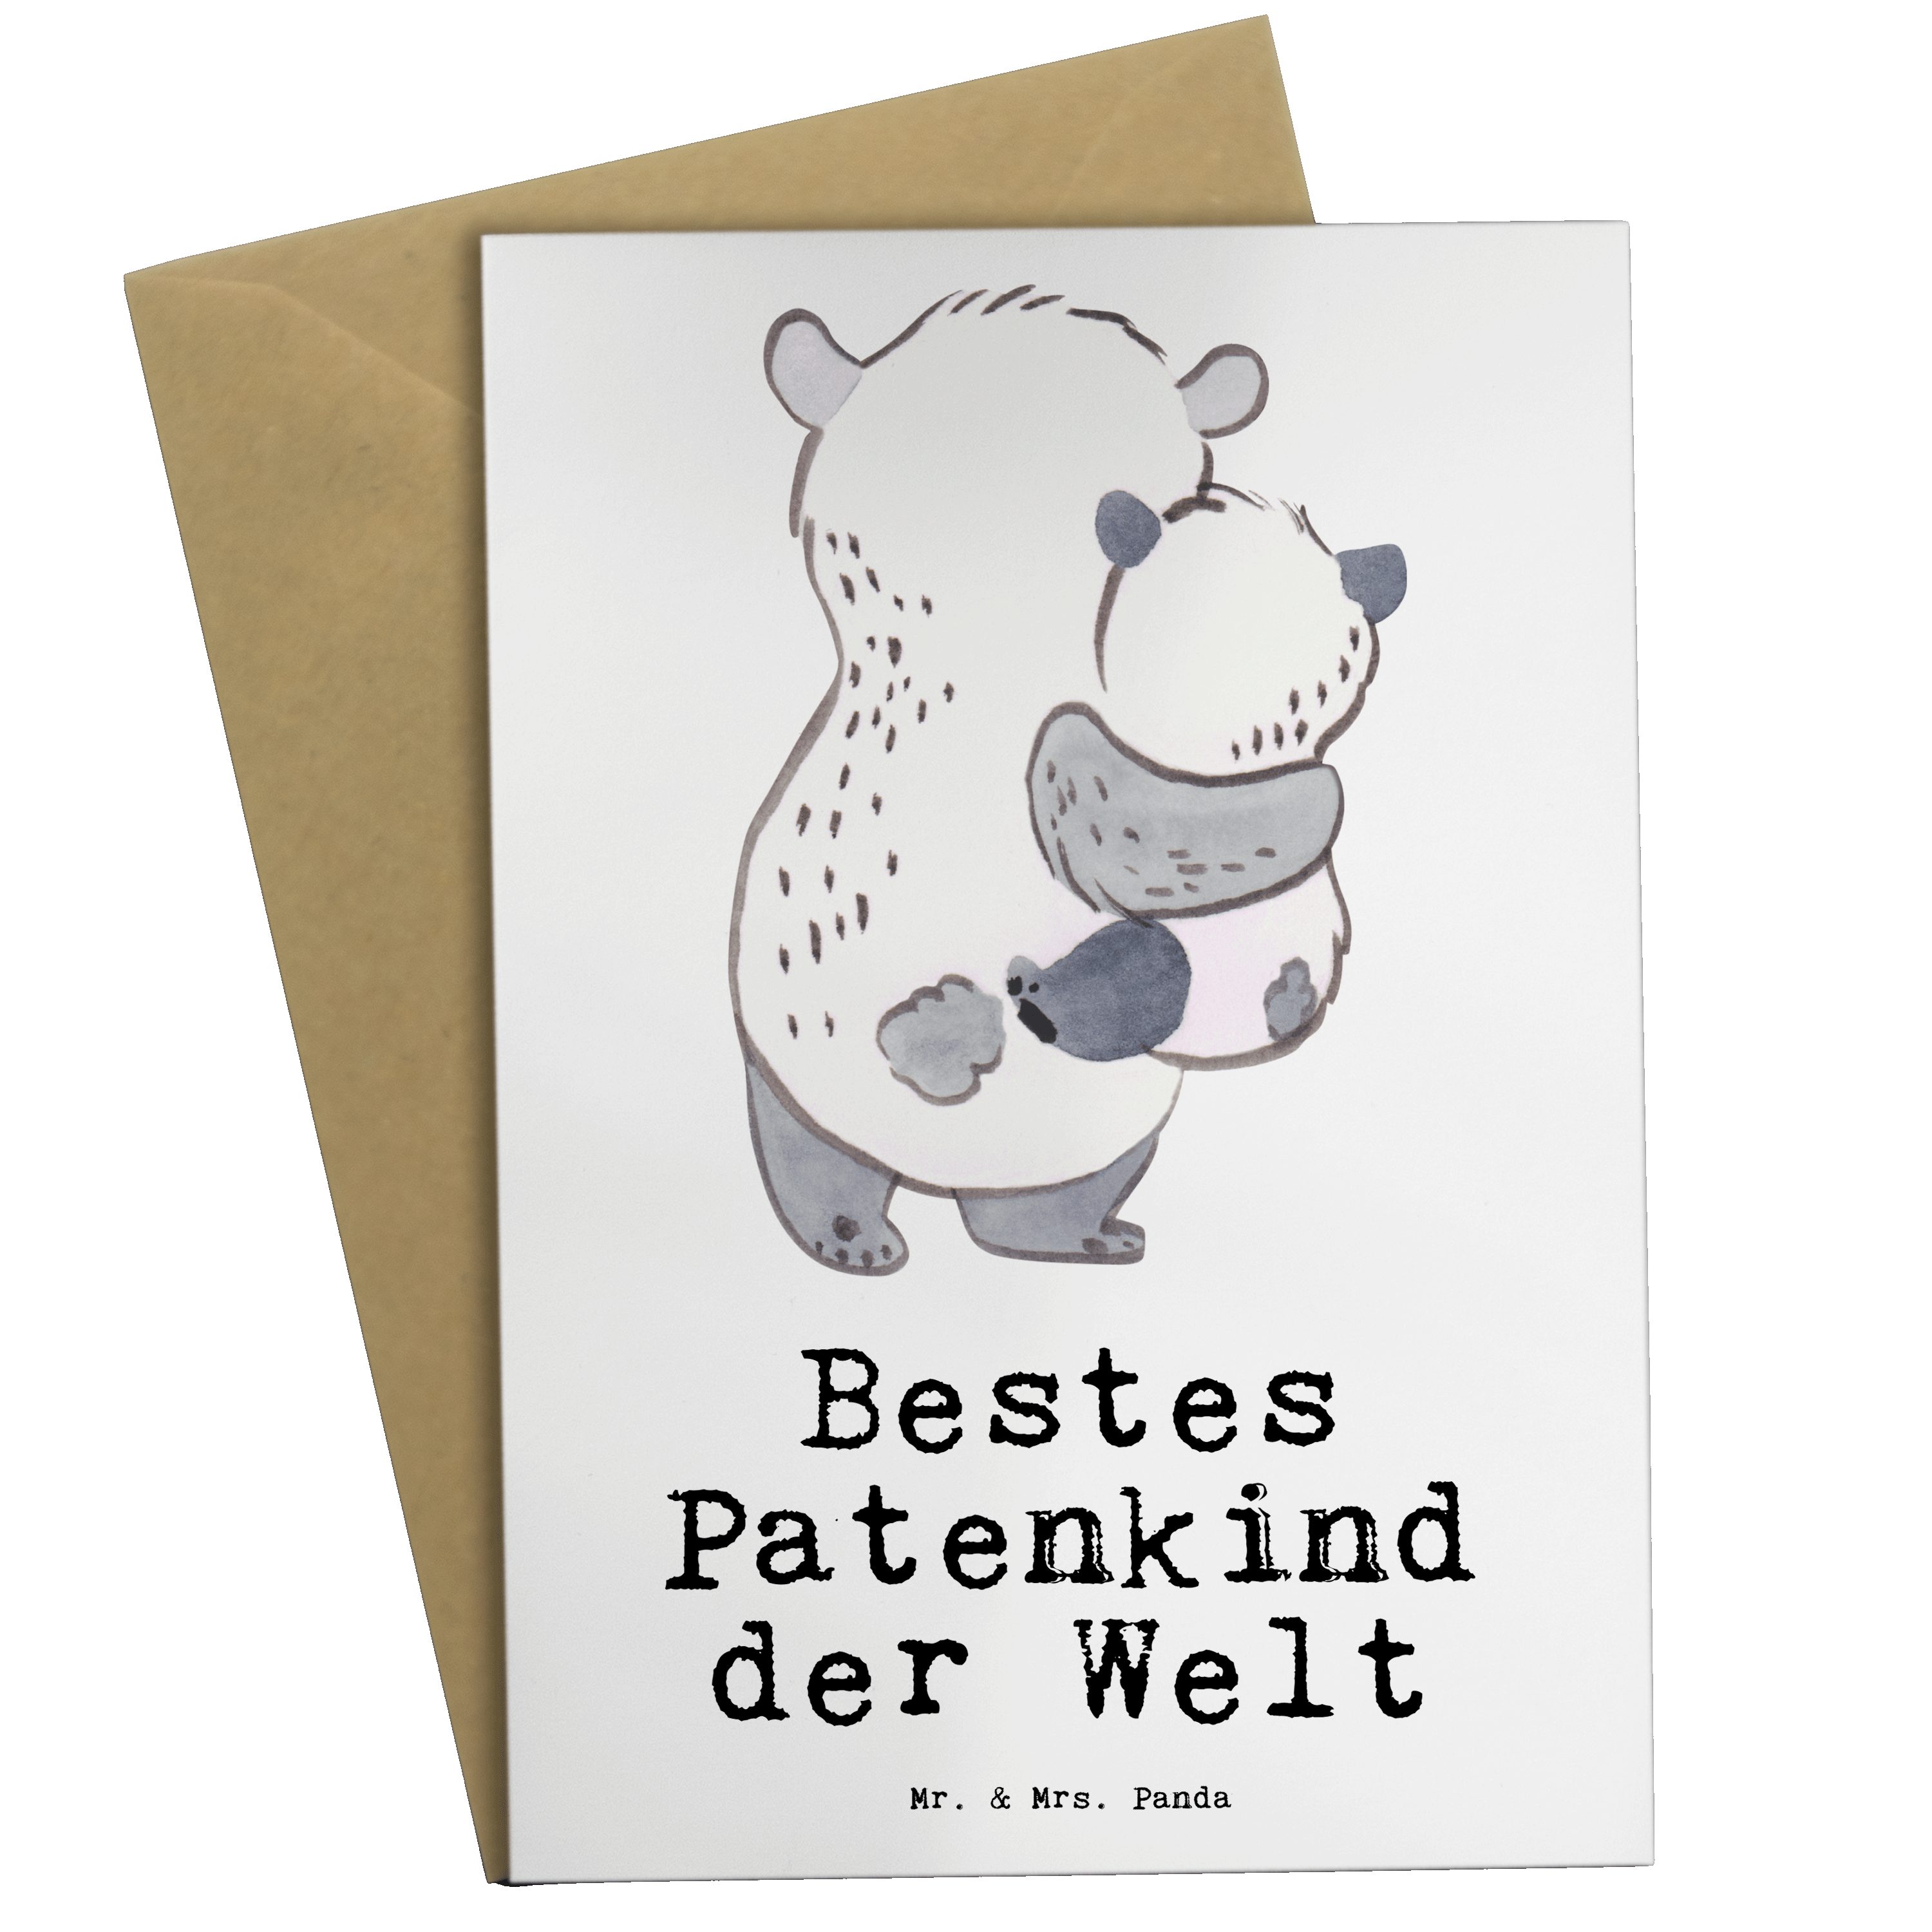 der Geburtstagsgeschen Grußkarte & - - Patenkind Mr. Geschenk, Bestes Mrs. Weiß Welt Panda Panda